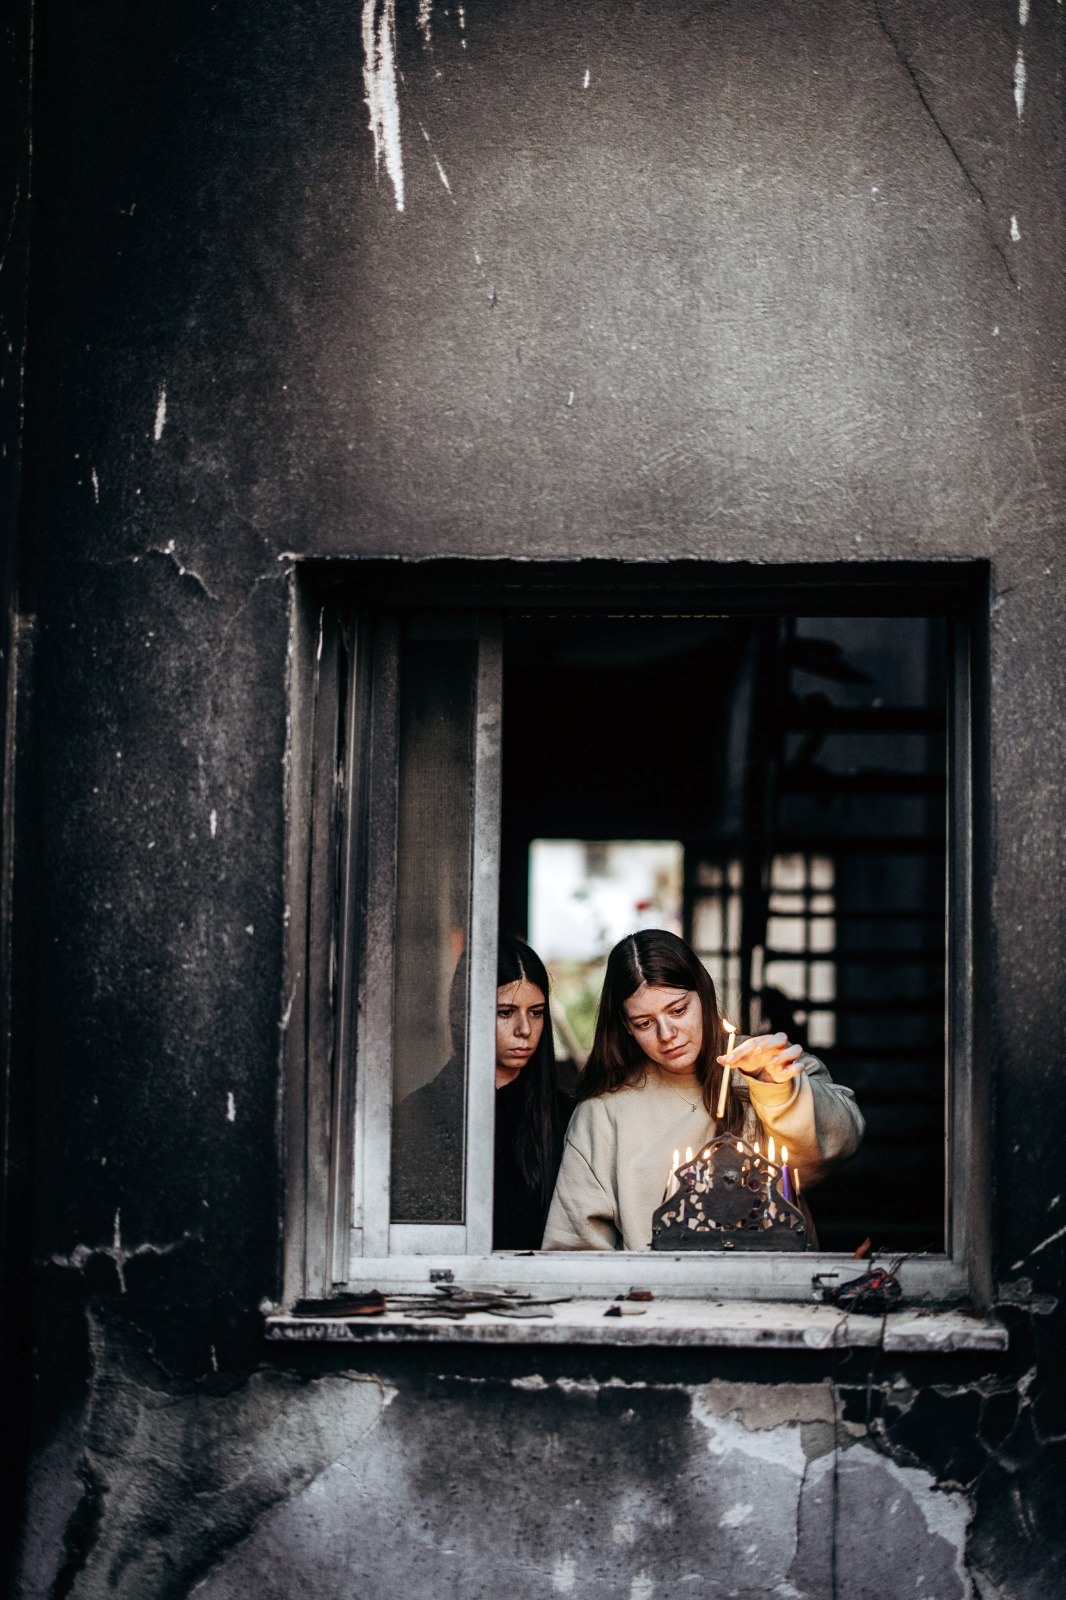 נגה וייס לאחר ששוחררה משבי חמאס, בהדלקת נר שמיני עם אחותה מיטל, בביקור ראשון בביתה ההרוס בבארי (צילום: מיכה בריקמן)